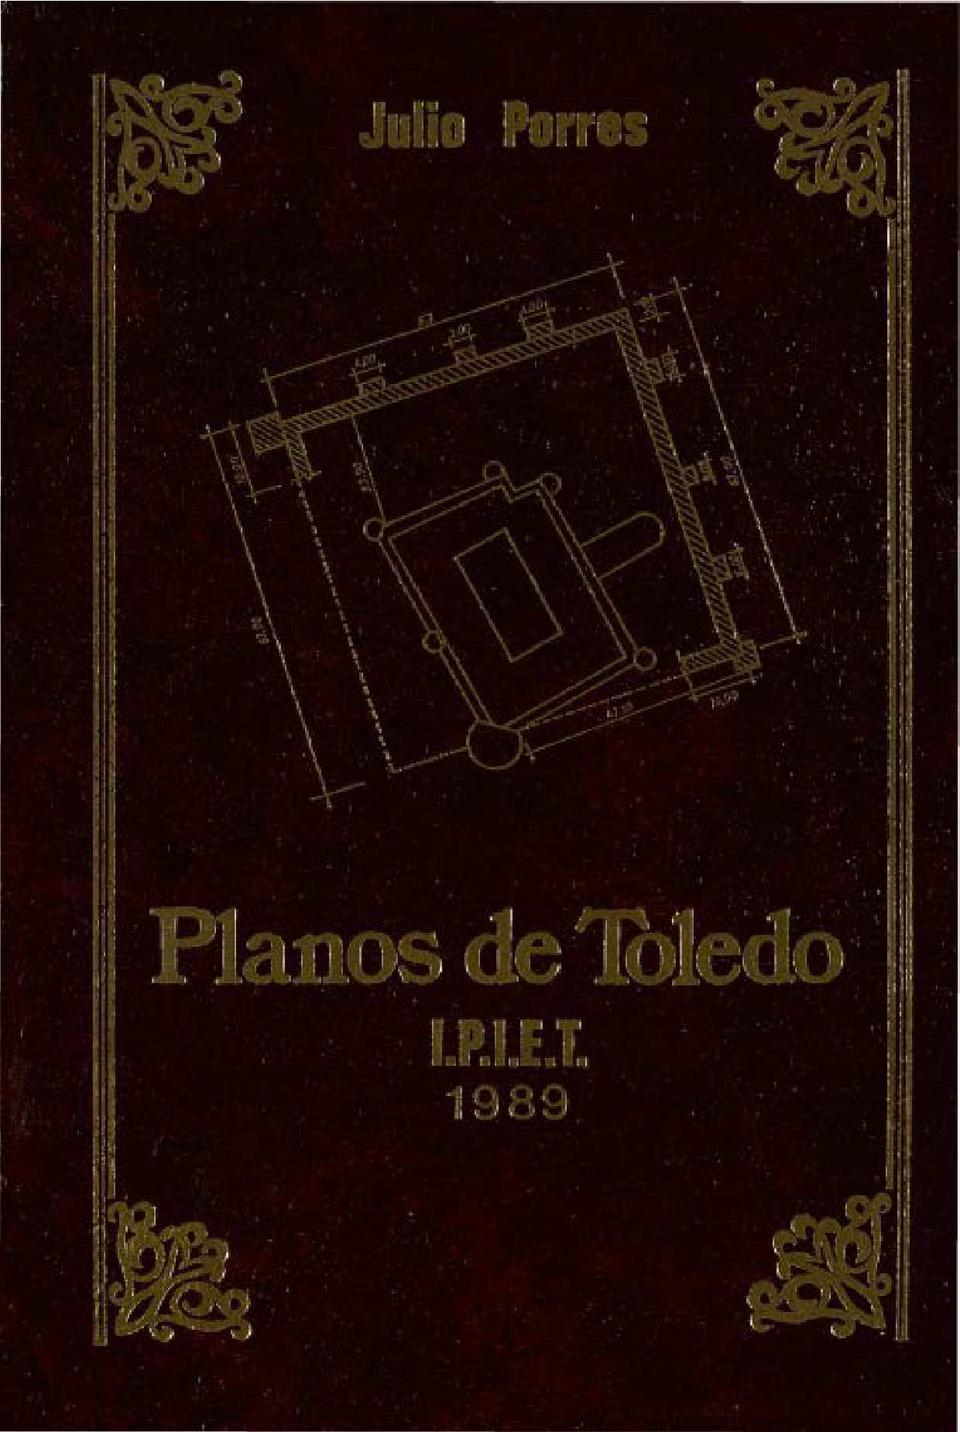 Toledo a través de sus planos / Julio Porres Martín-Cleto.-. [Monografía]